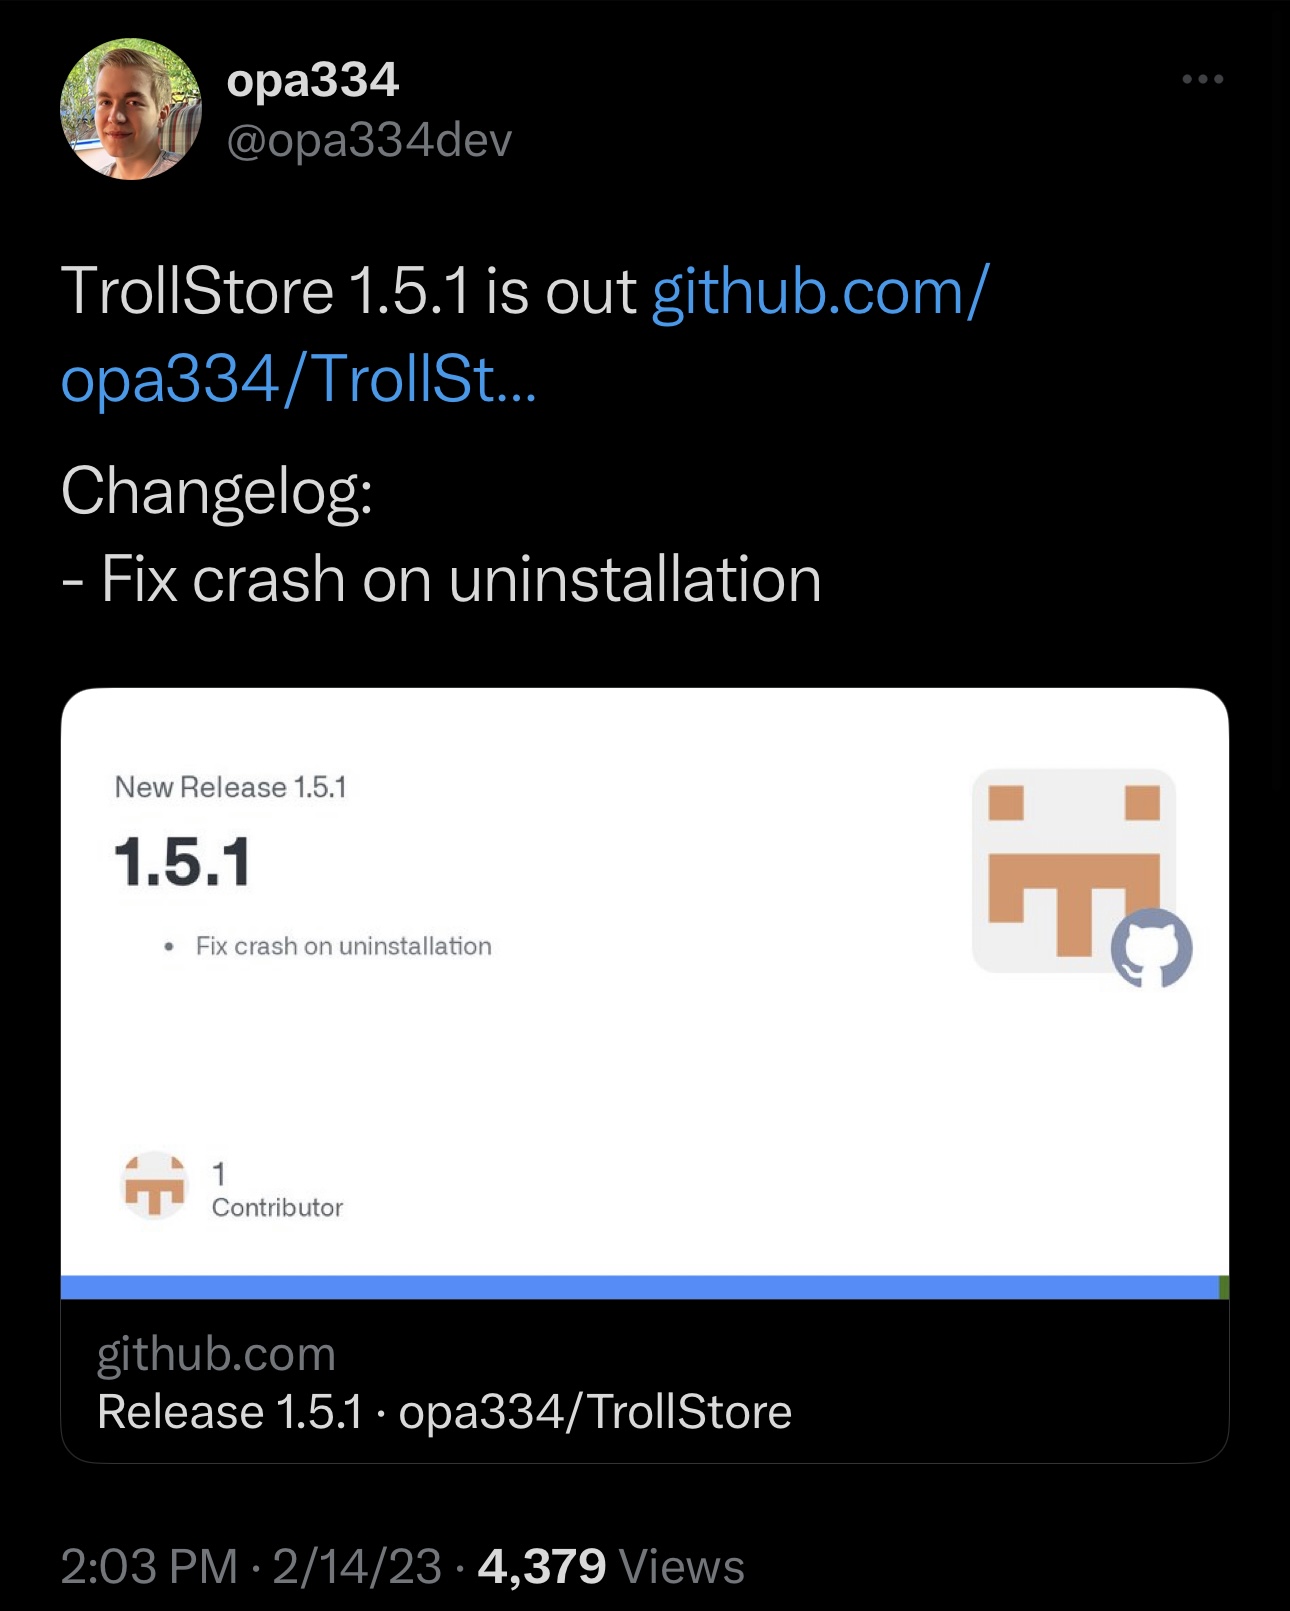 TrollStore v1.5.1 announcement Tweet.